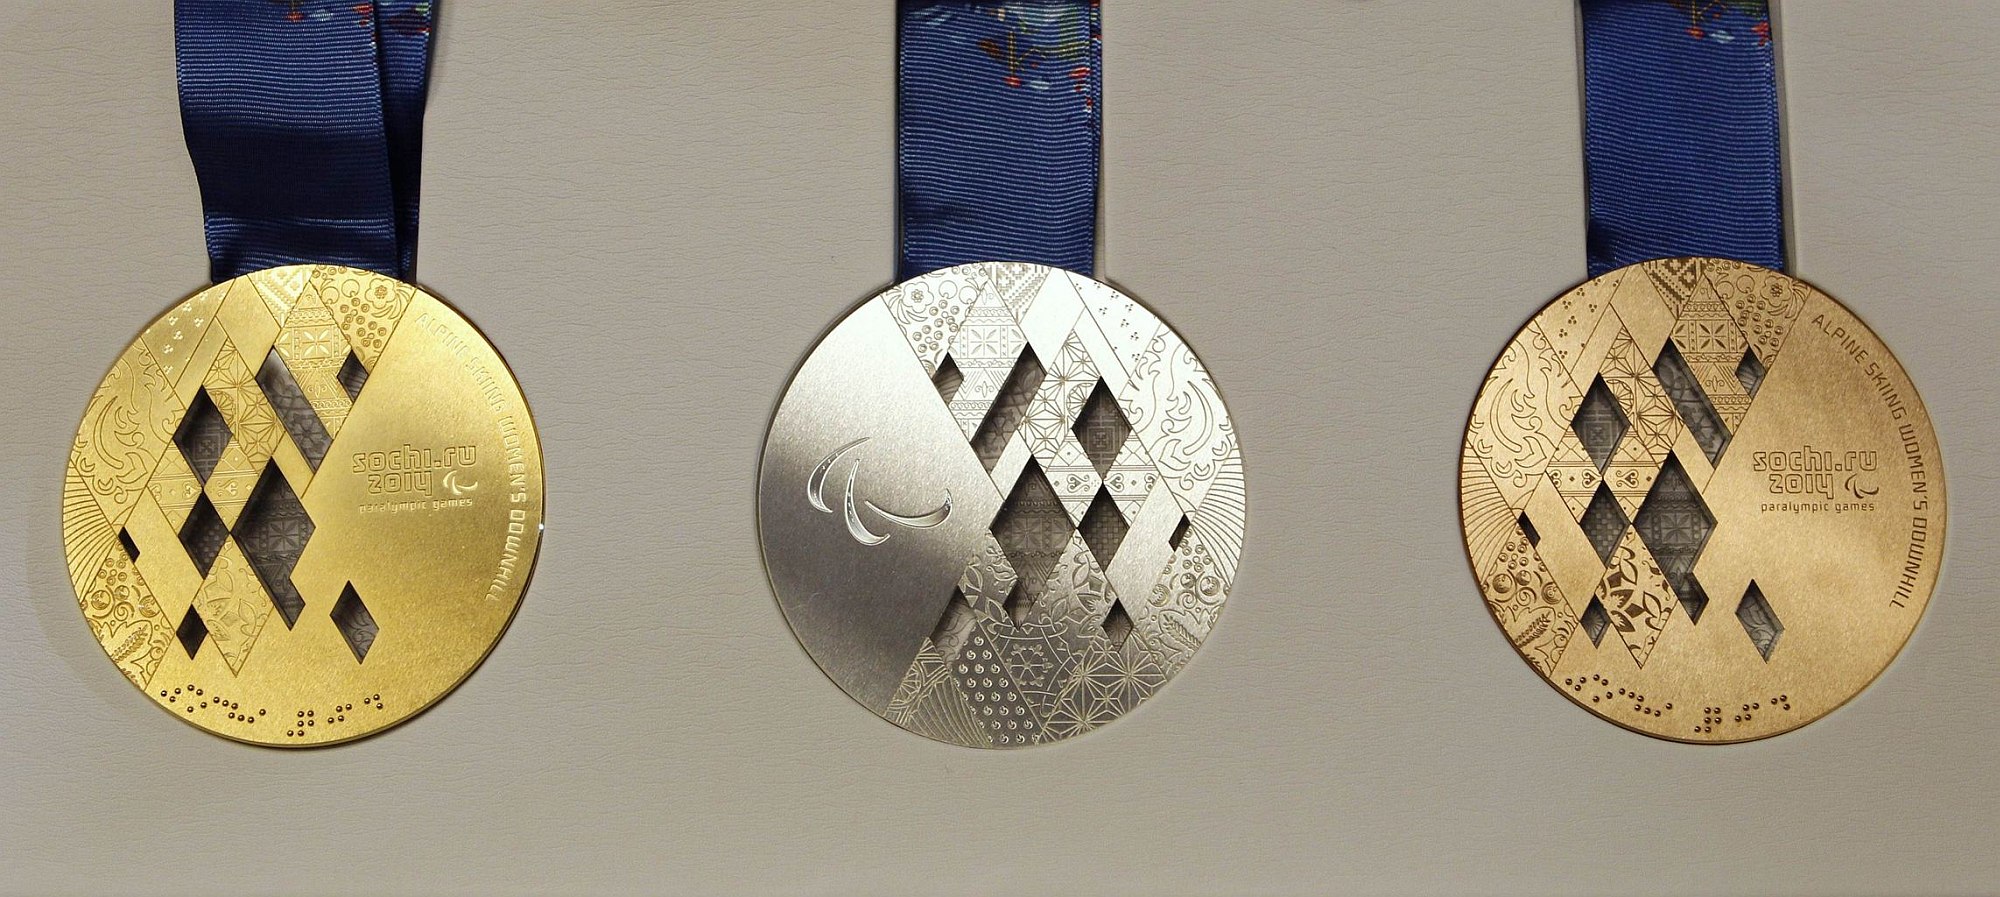 Олимпийская медаль 2014 года